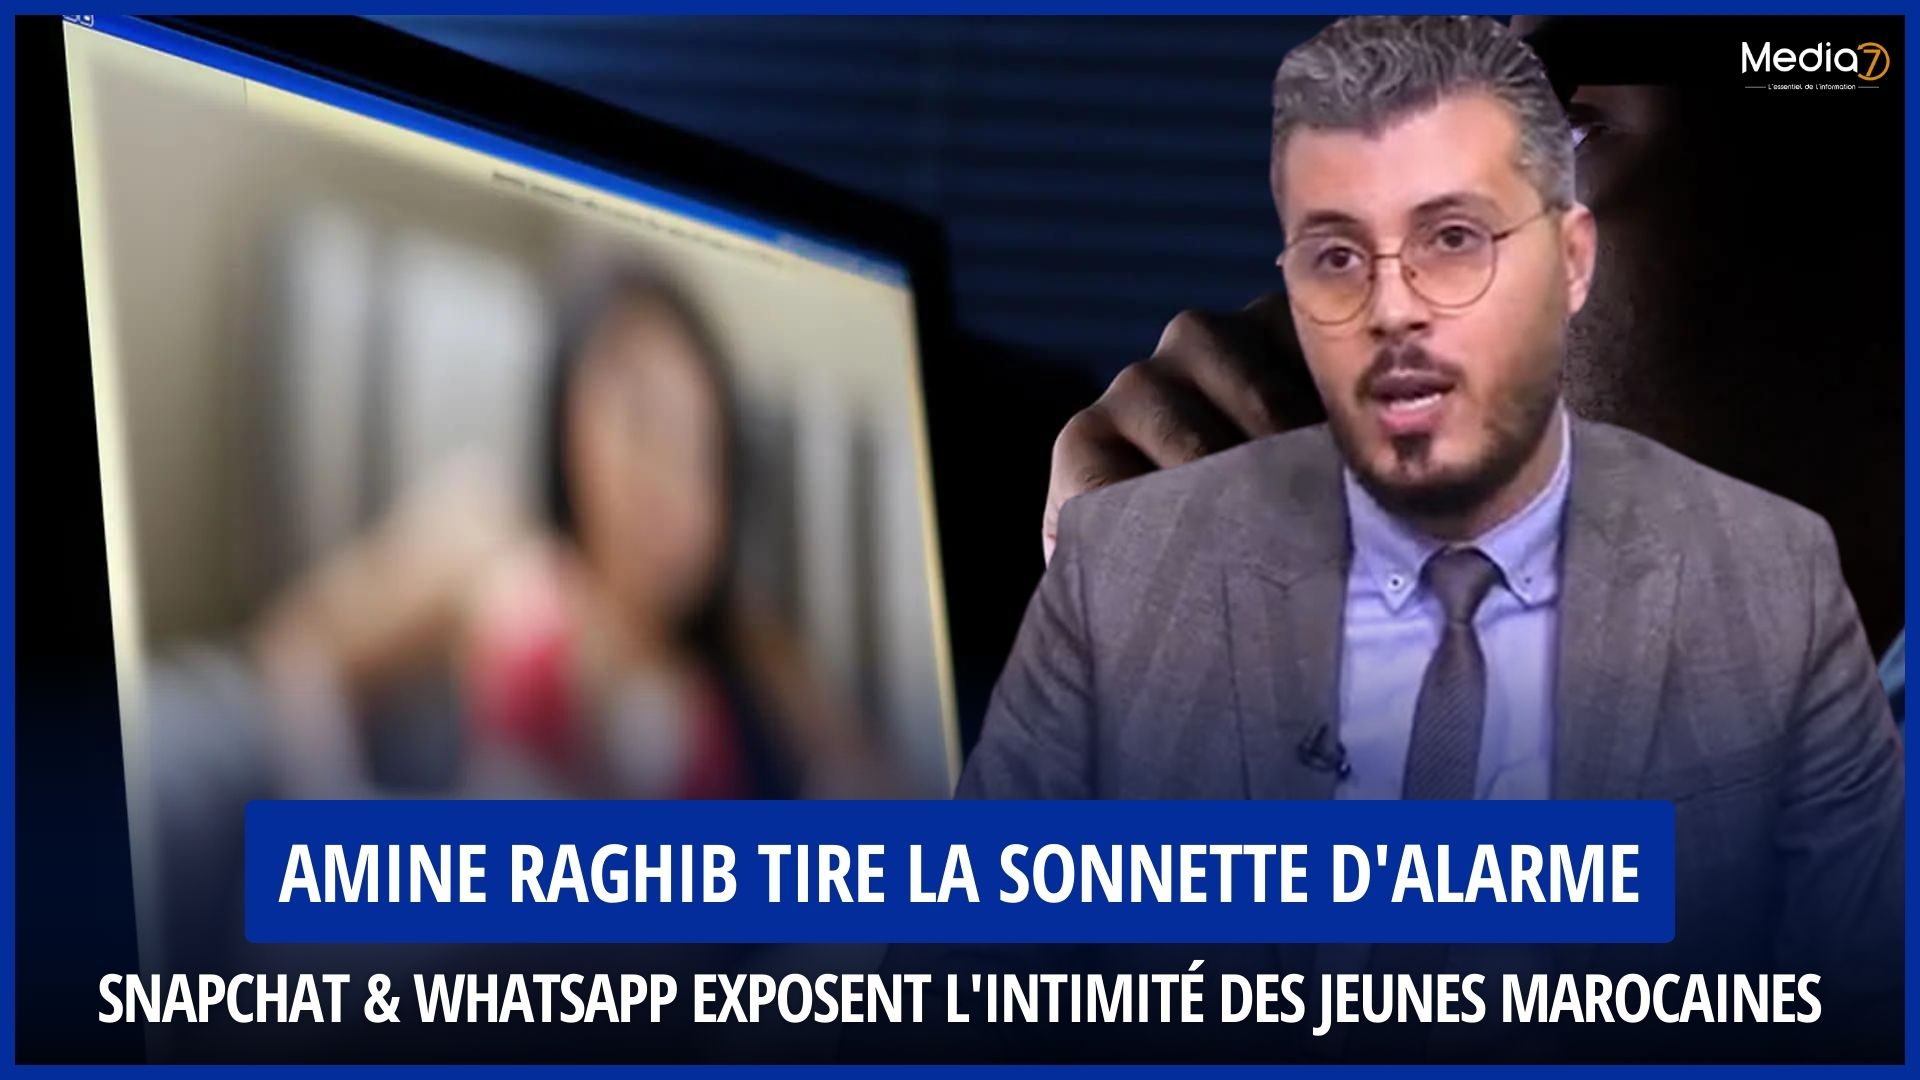 Révélation Choc : Snapchat & Whatsapp Exposent l'Intimité des Jeunes Marocaines, Amine Raghib Tire la Sonnette d'Alarme